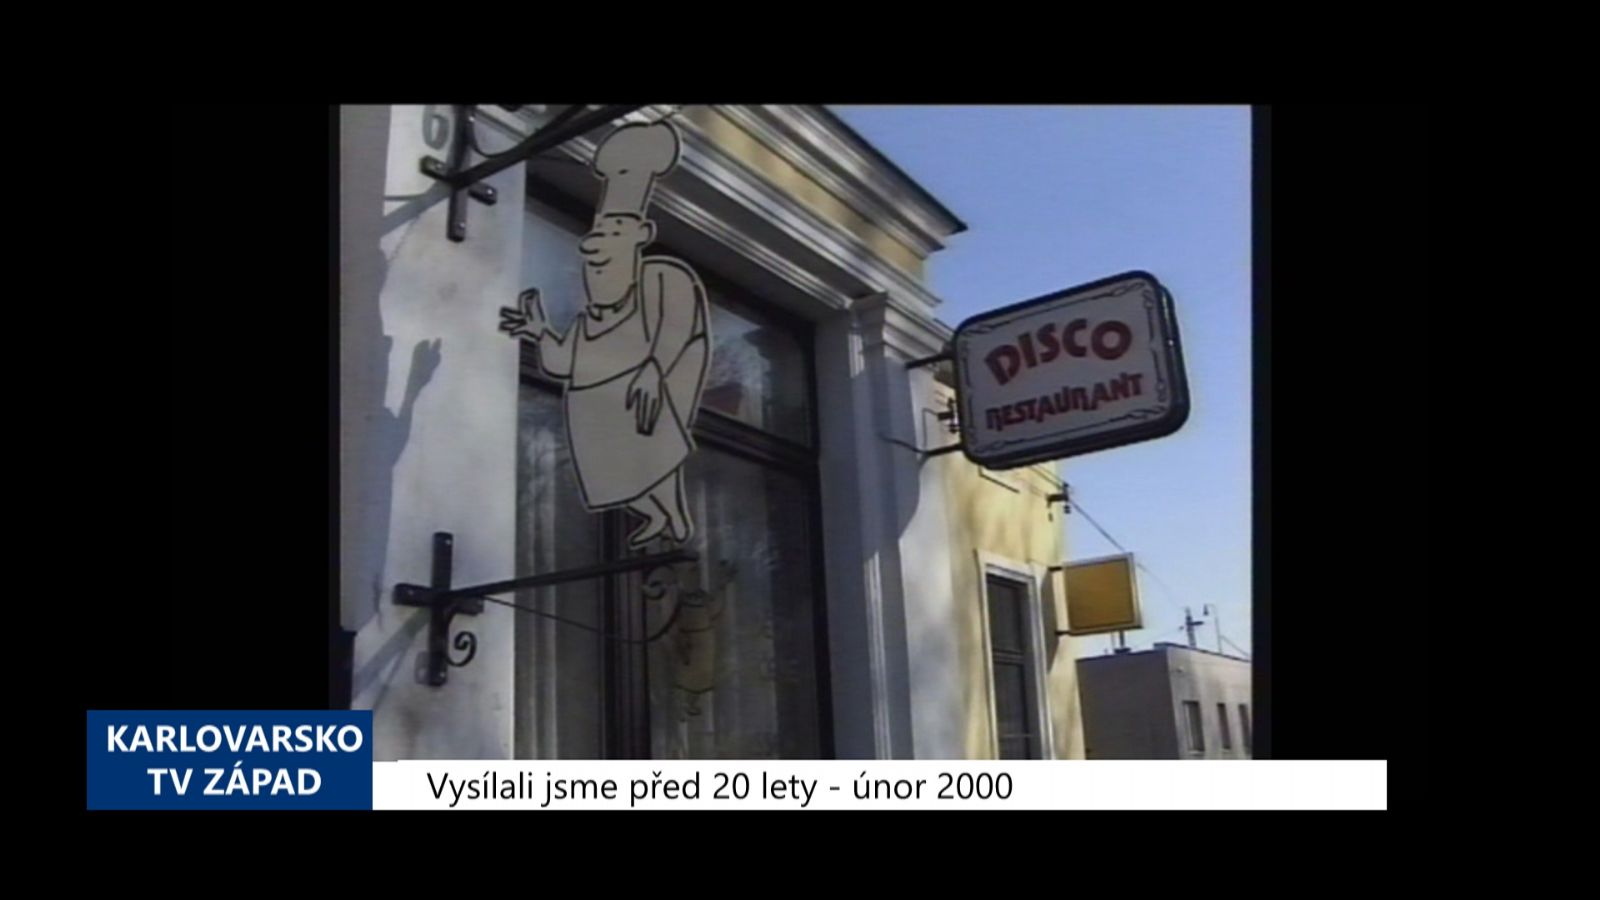 2000 – Františkovy Lázně: Loupit měl chebský strážník MP (TV Západ)